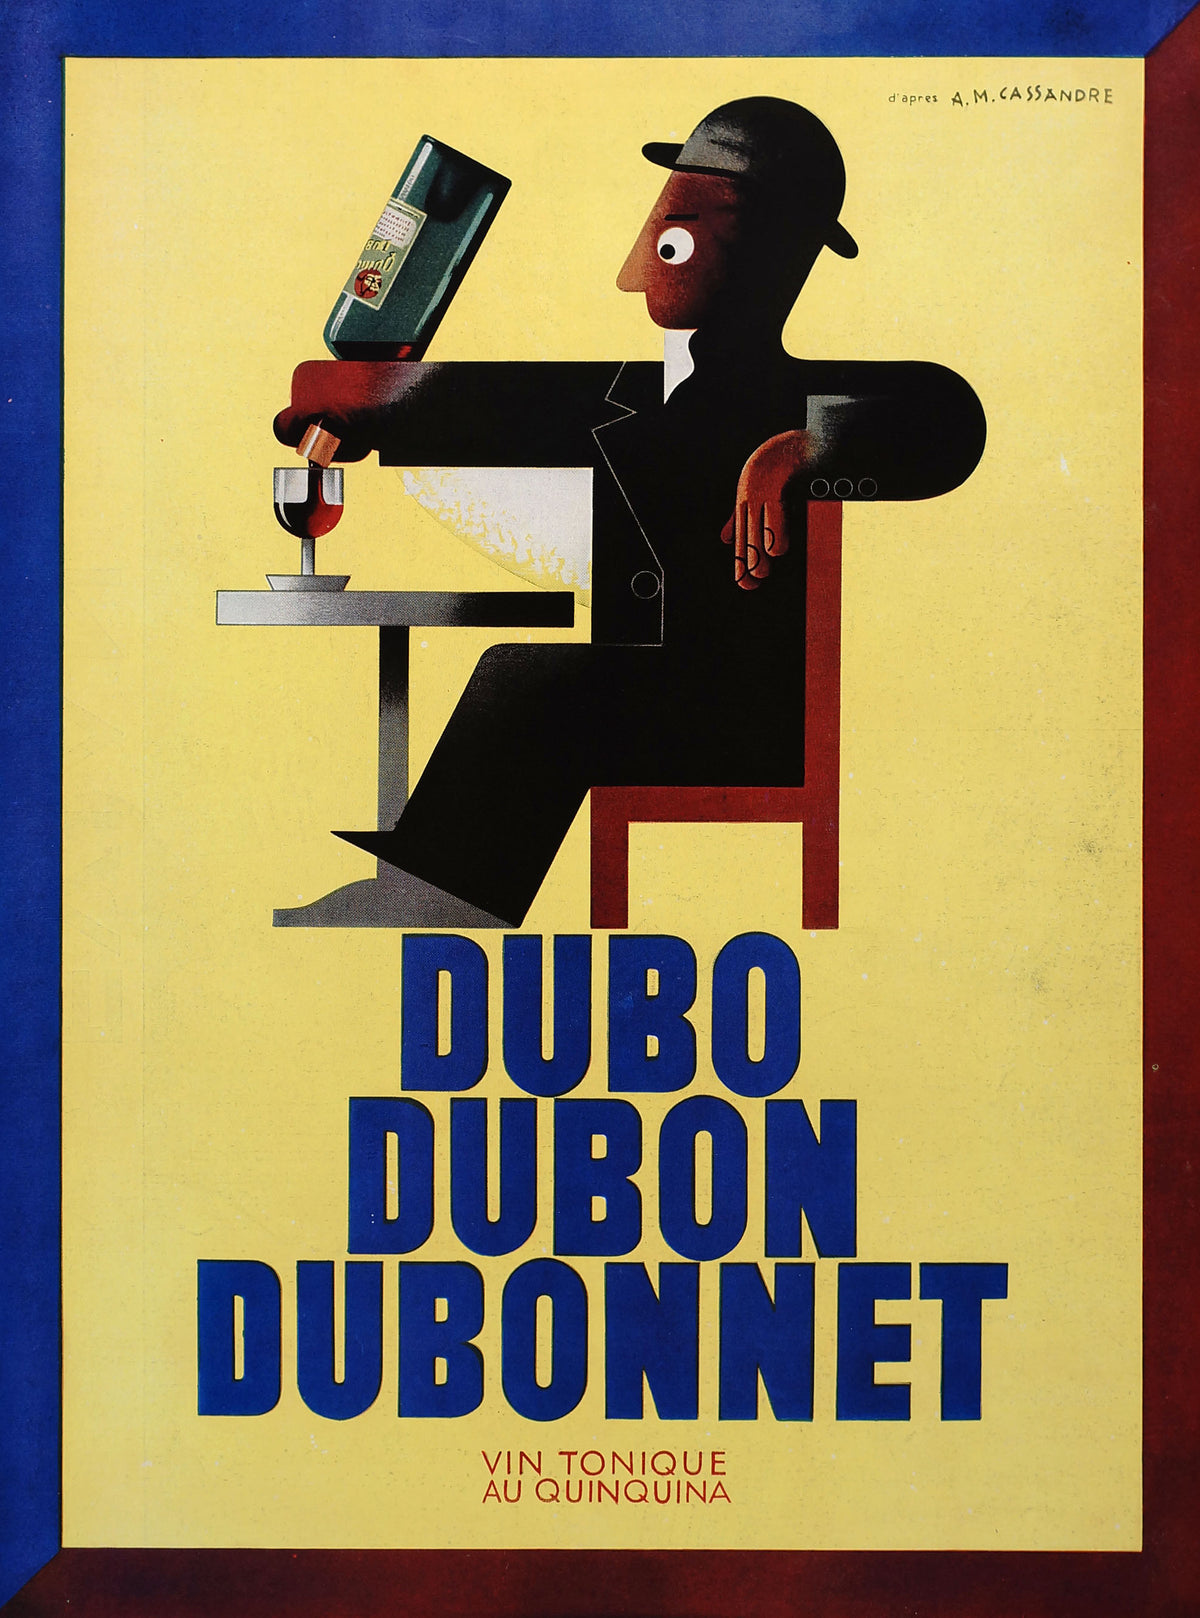 Cassandre - Dubonnet Print Ad - Authentic Vintage Poster